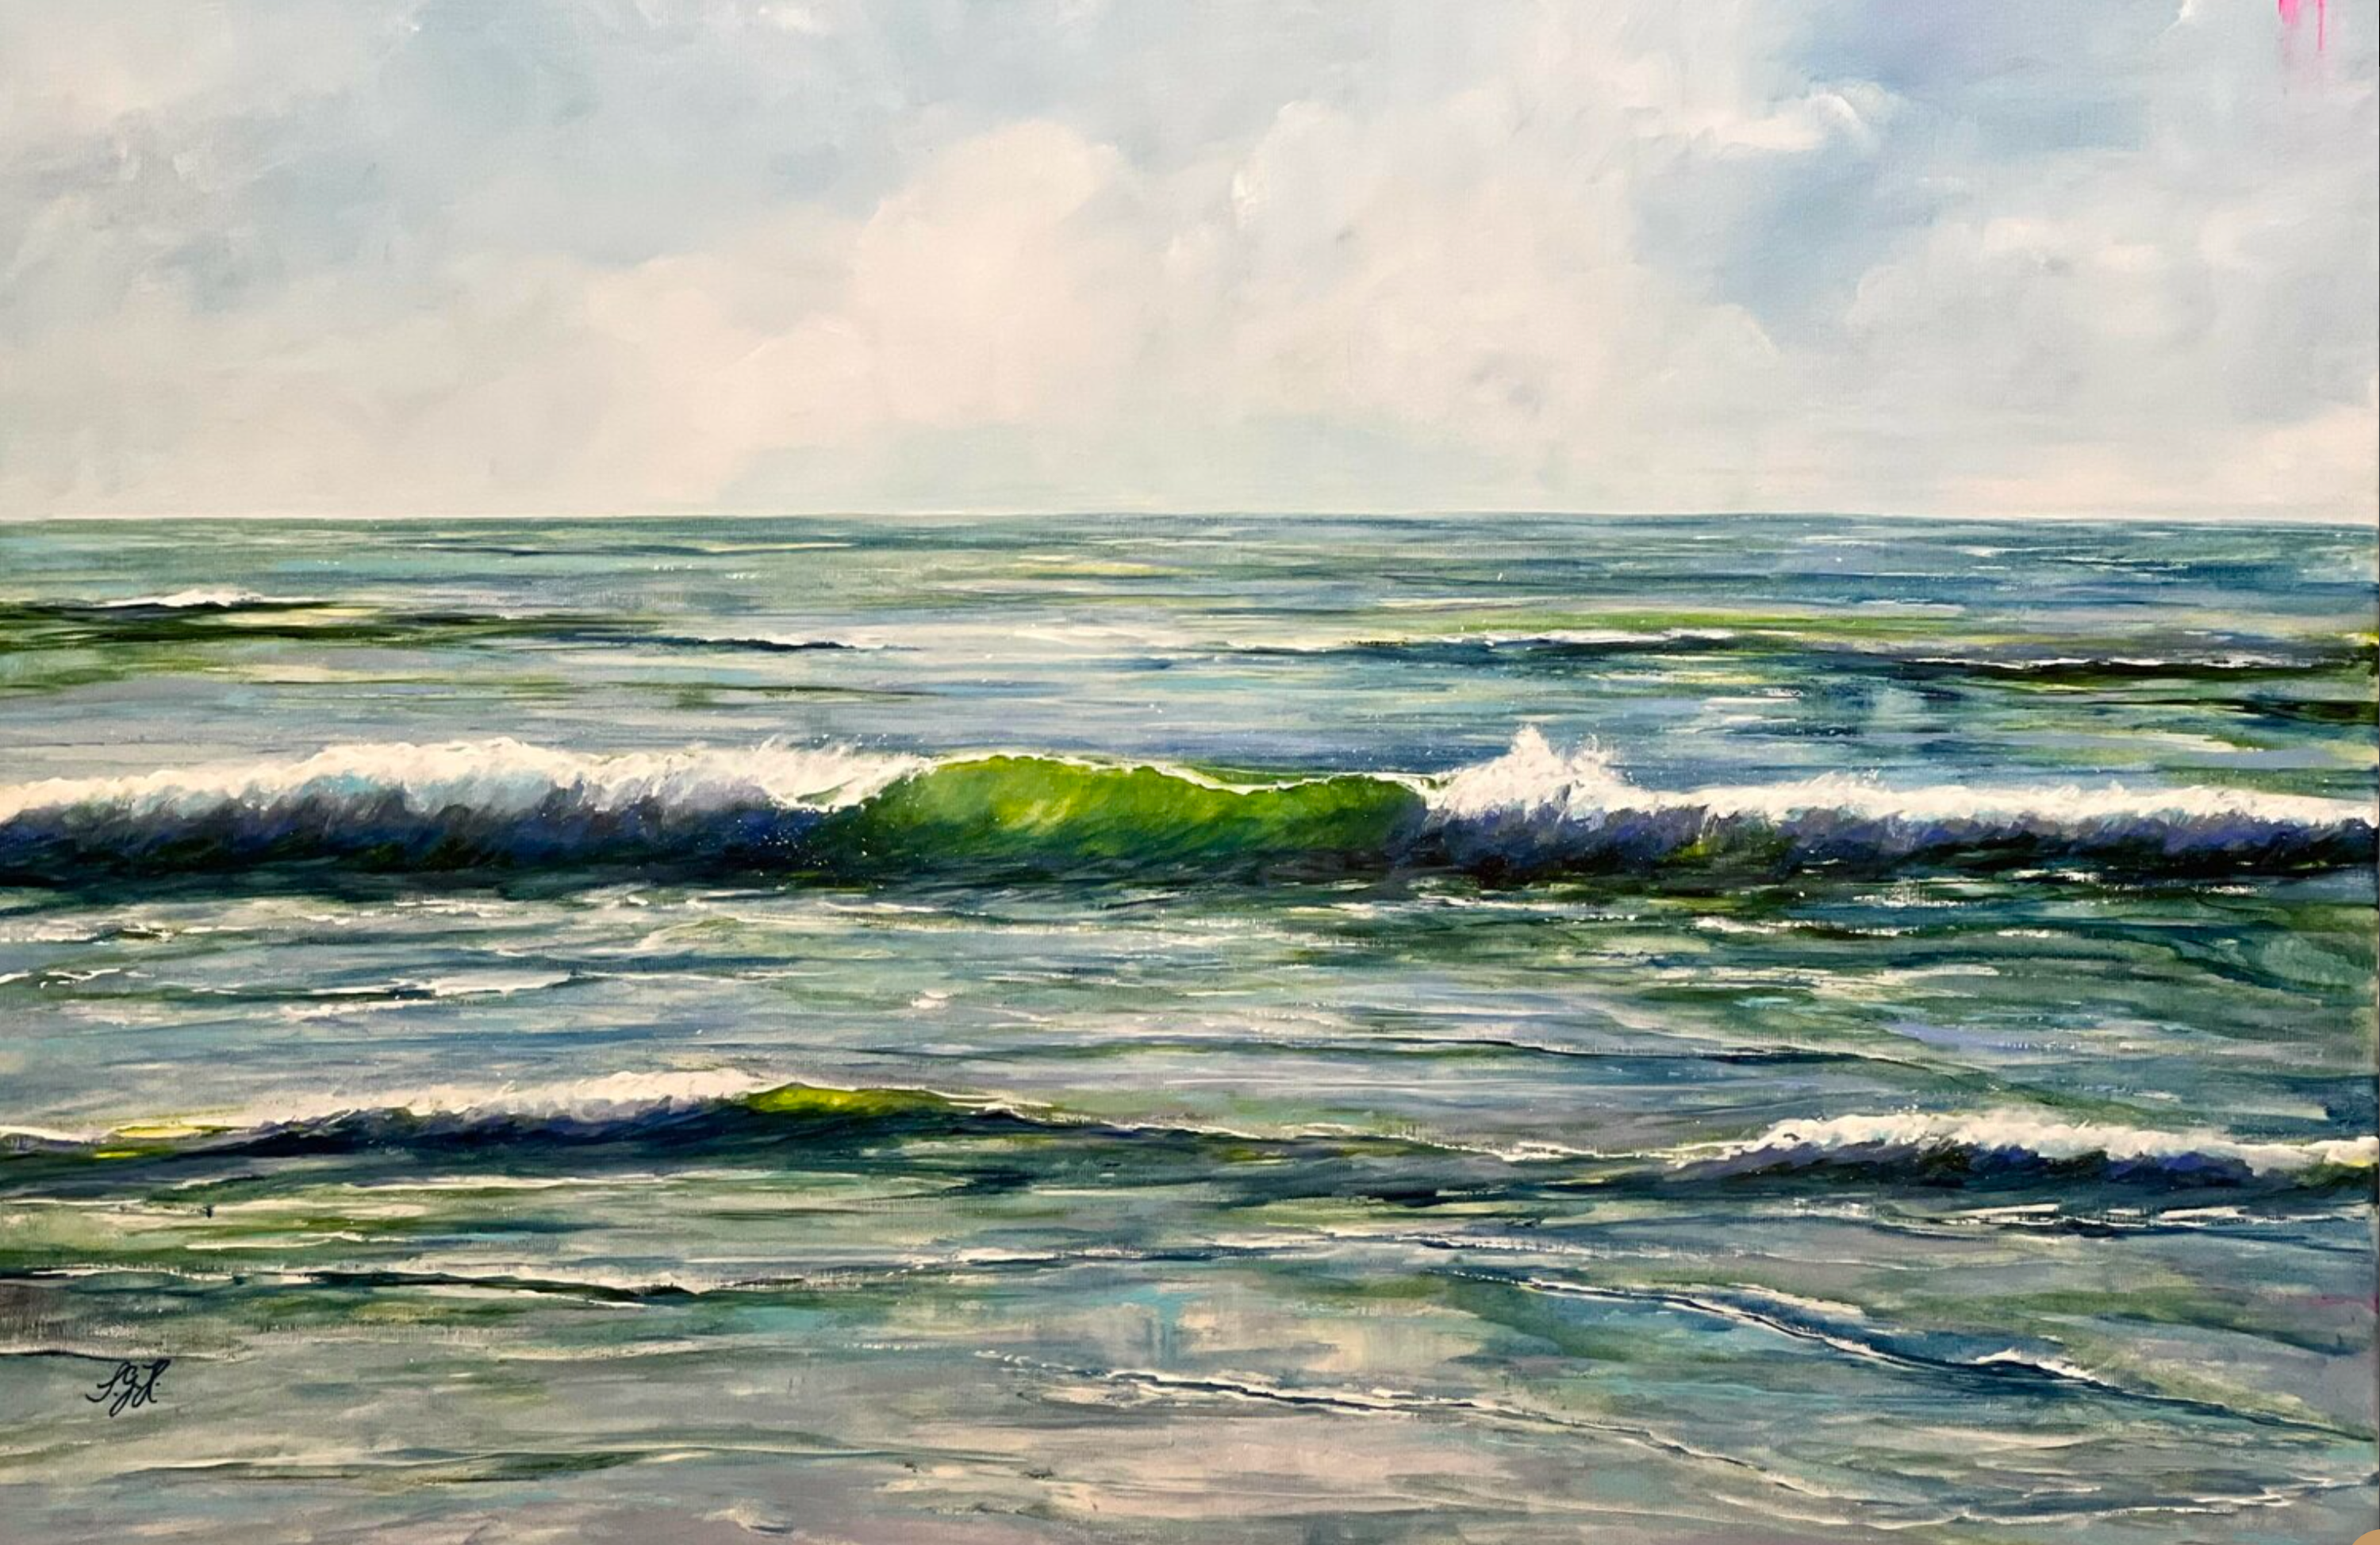 Le tableau "Green Wave 2" de Sandra Gebhardt-Hoepfner. Le soleil brille haut dans le ciel et donne aux vagues qui se brisent dans la mer magnifique des reflets verts translucides. C'est une journée magnifique, au cœur de la nature. Le bonheur est au rendez-vous. Les couleurs sont le vert clair, le vert foncé, le bleu foncé, le bleu gris, le gris foncé et le blanc.